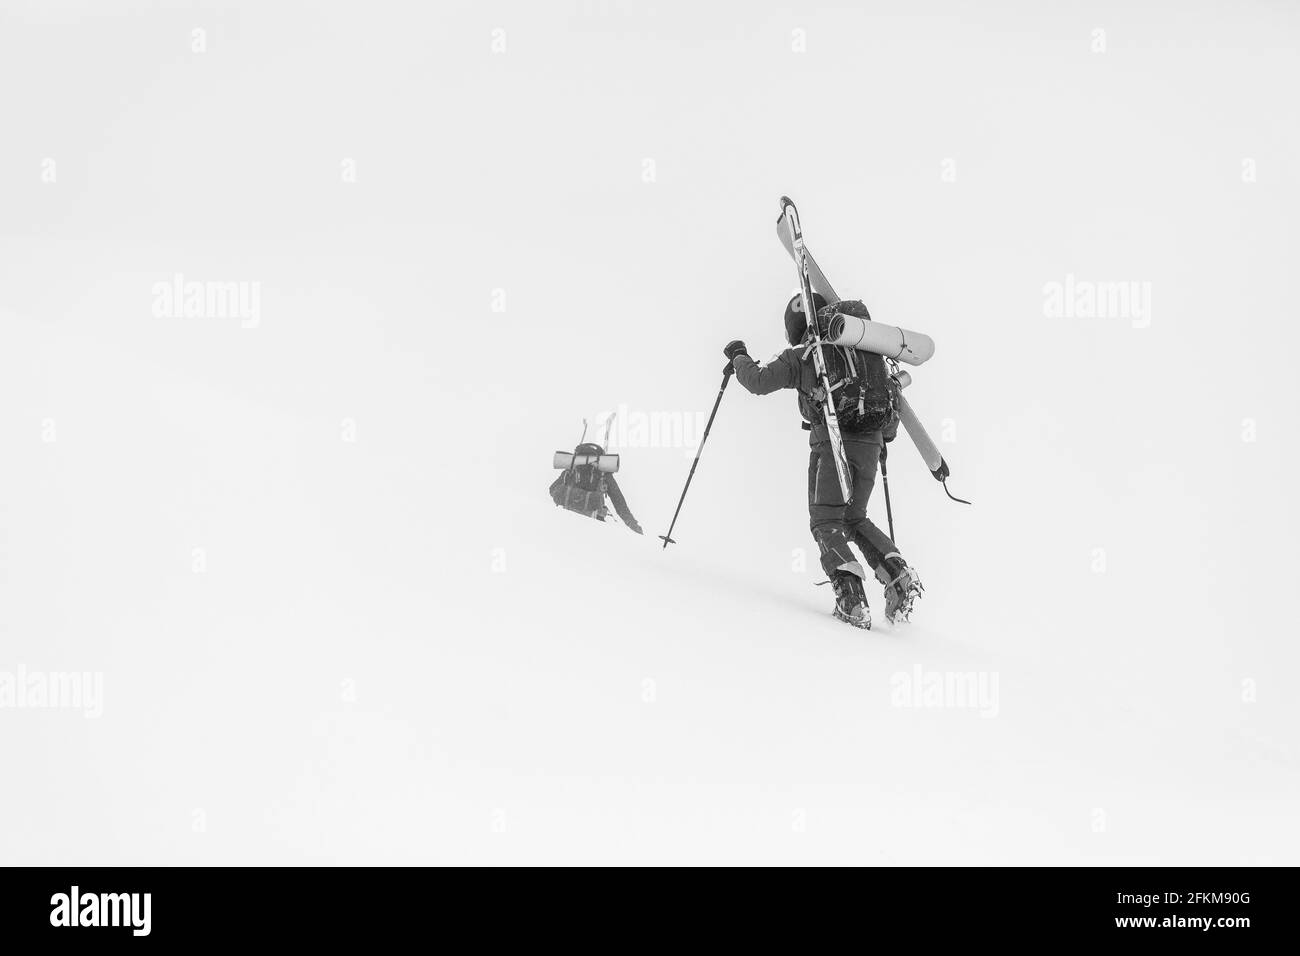 Le skieur marche sur la glace avec des crampons portant ses skis Banque D'Images